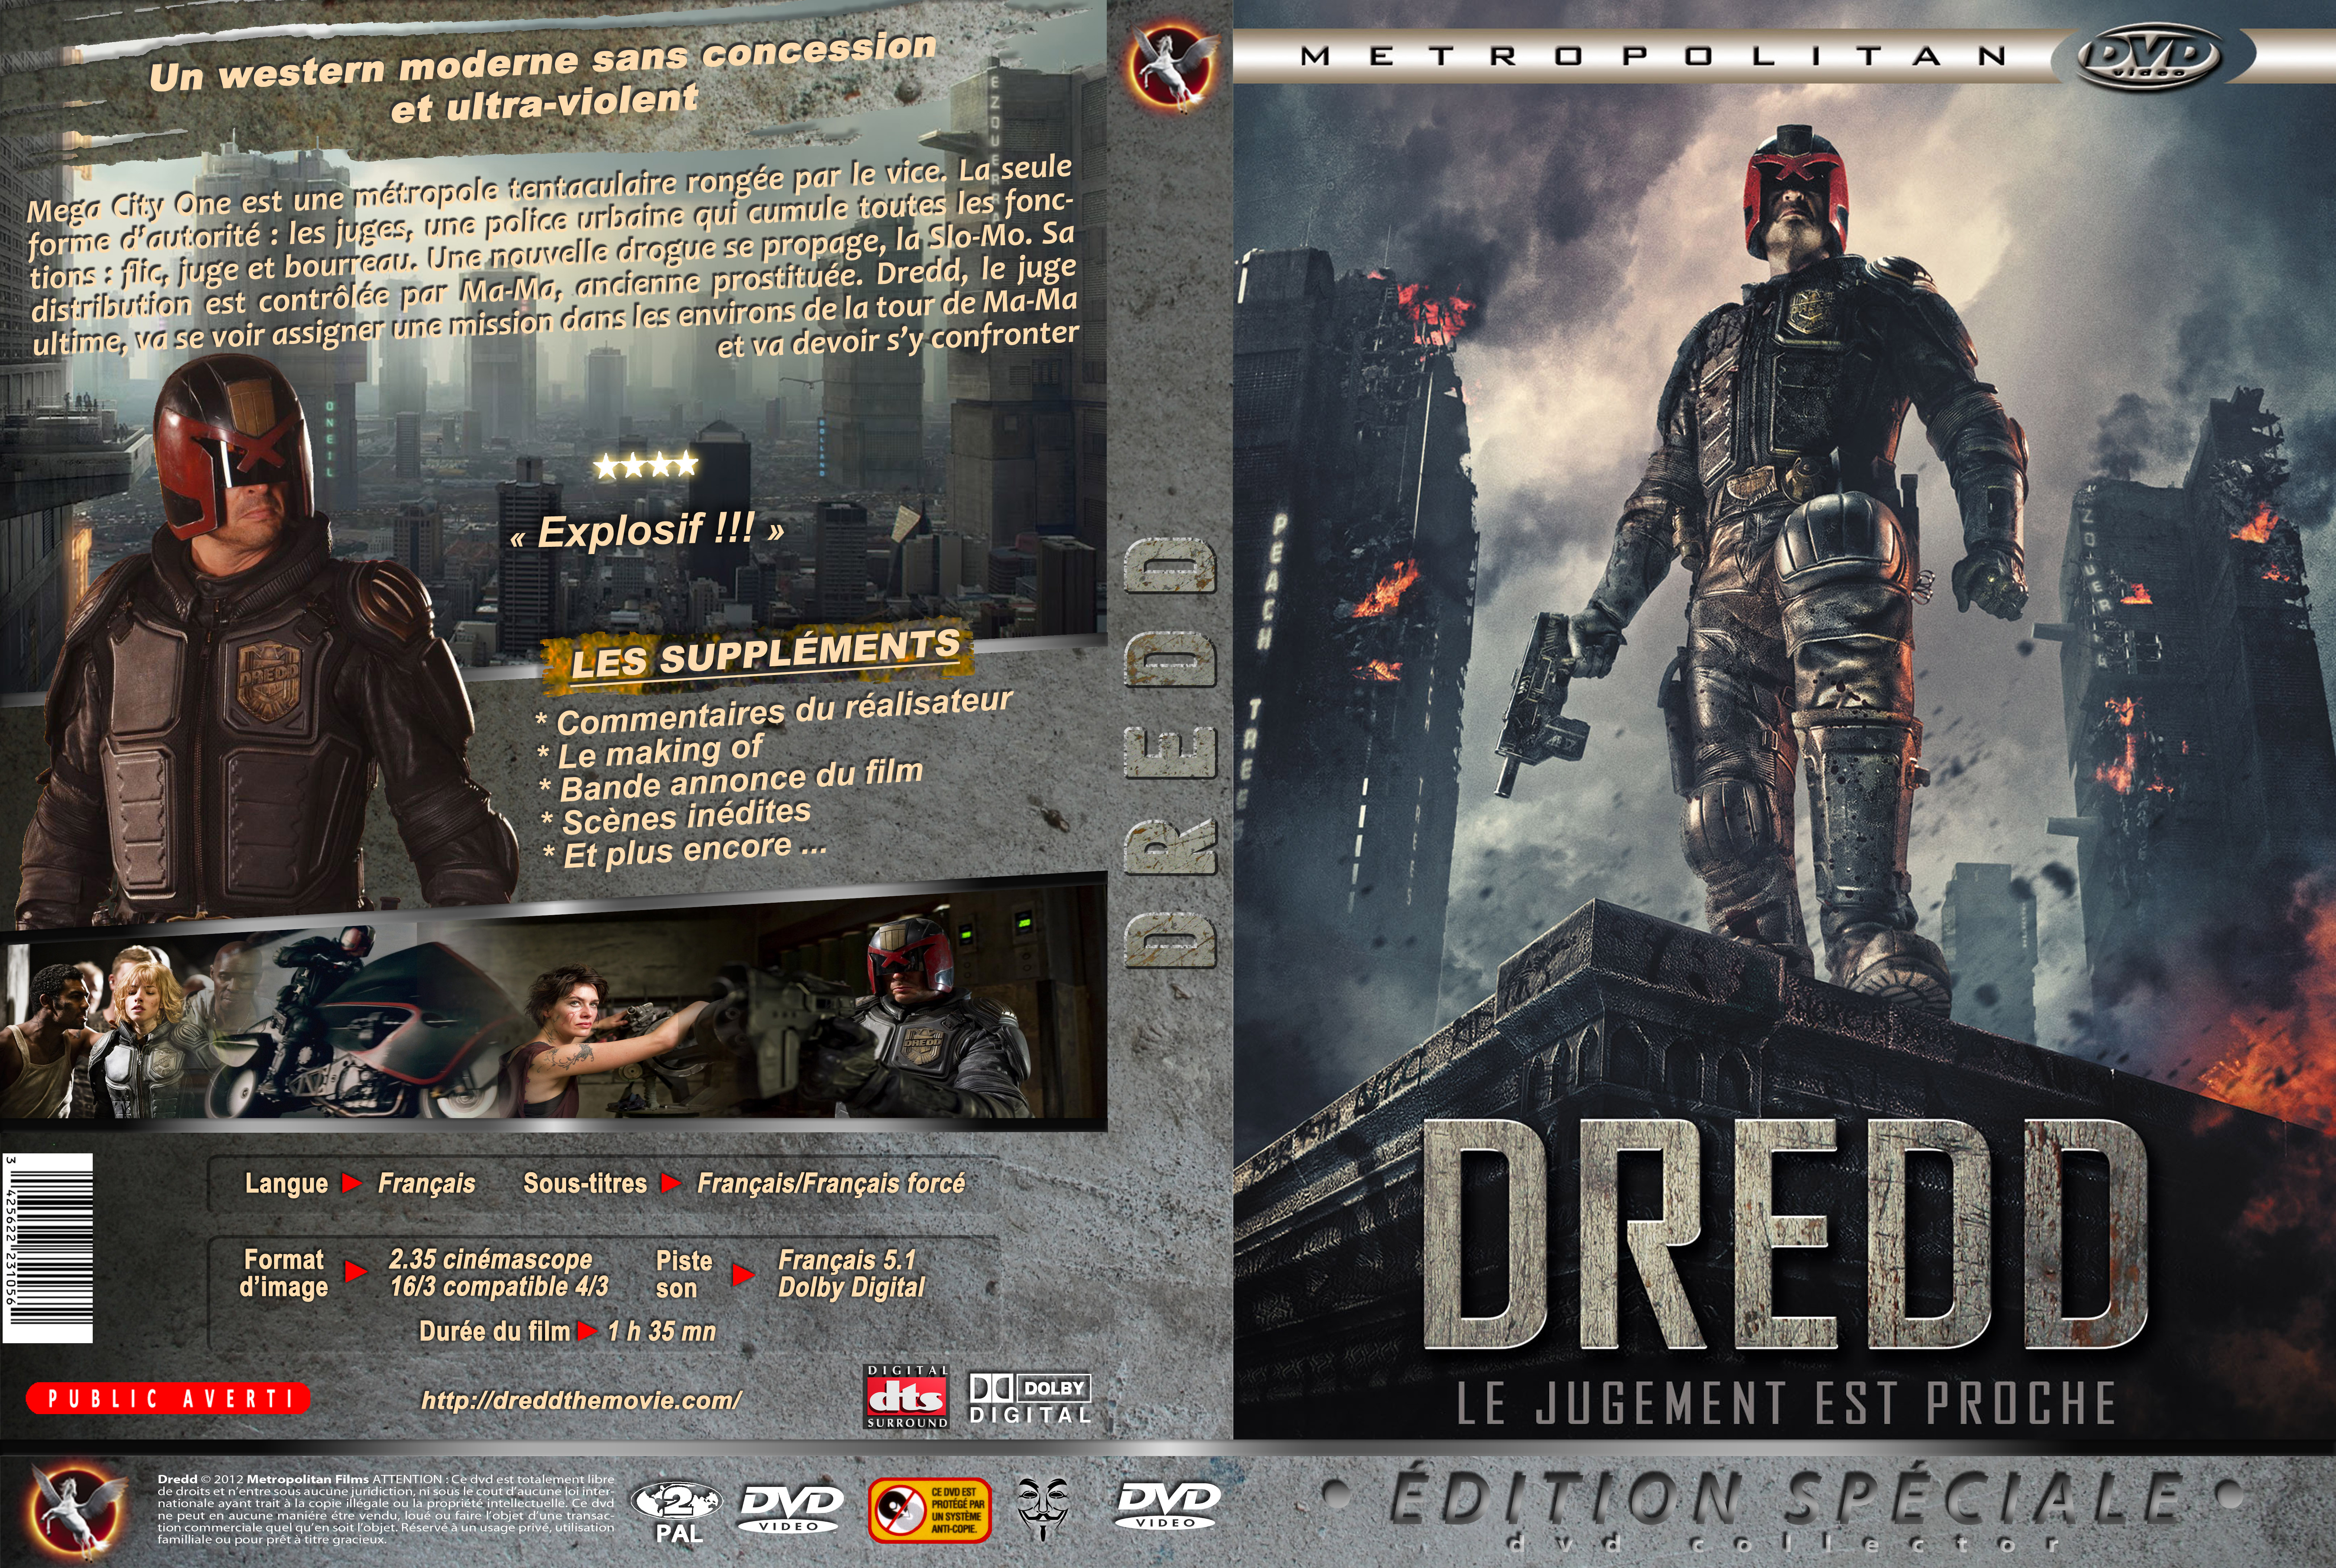 Jaquette DVD Dredd custom v2